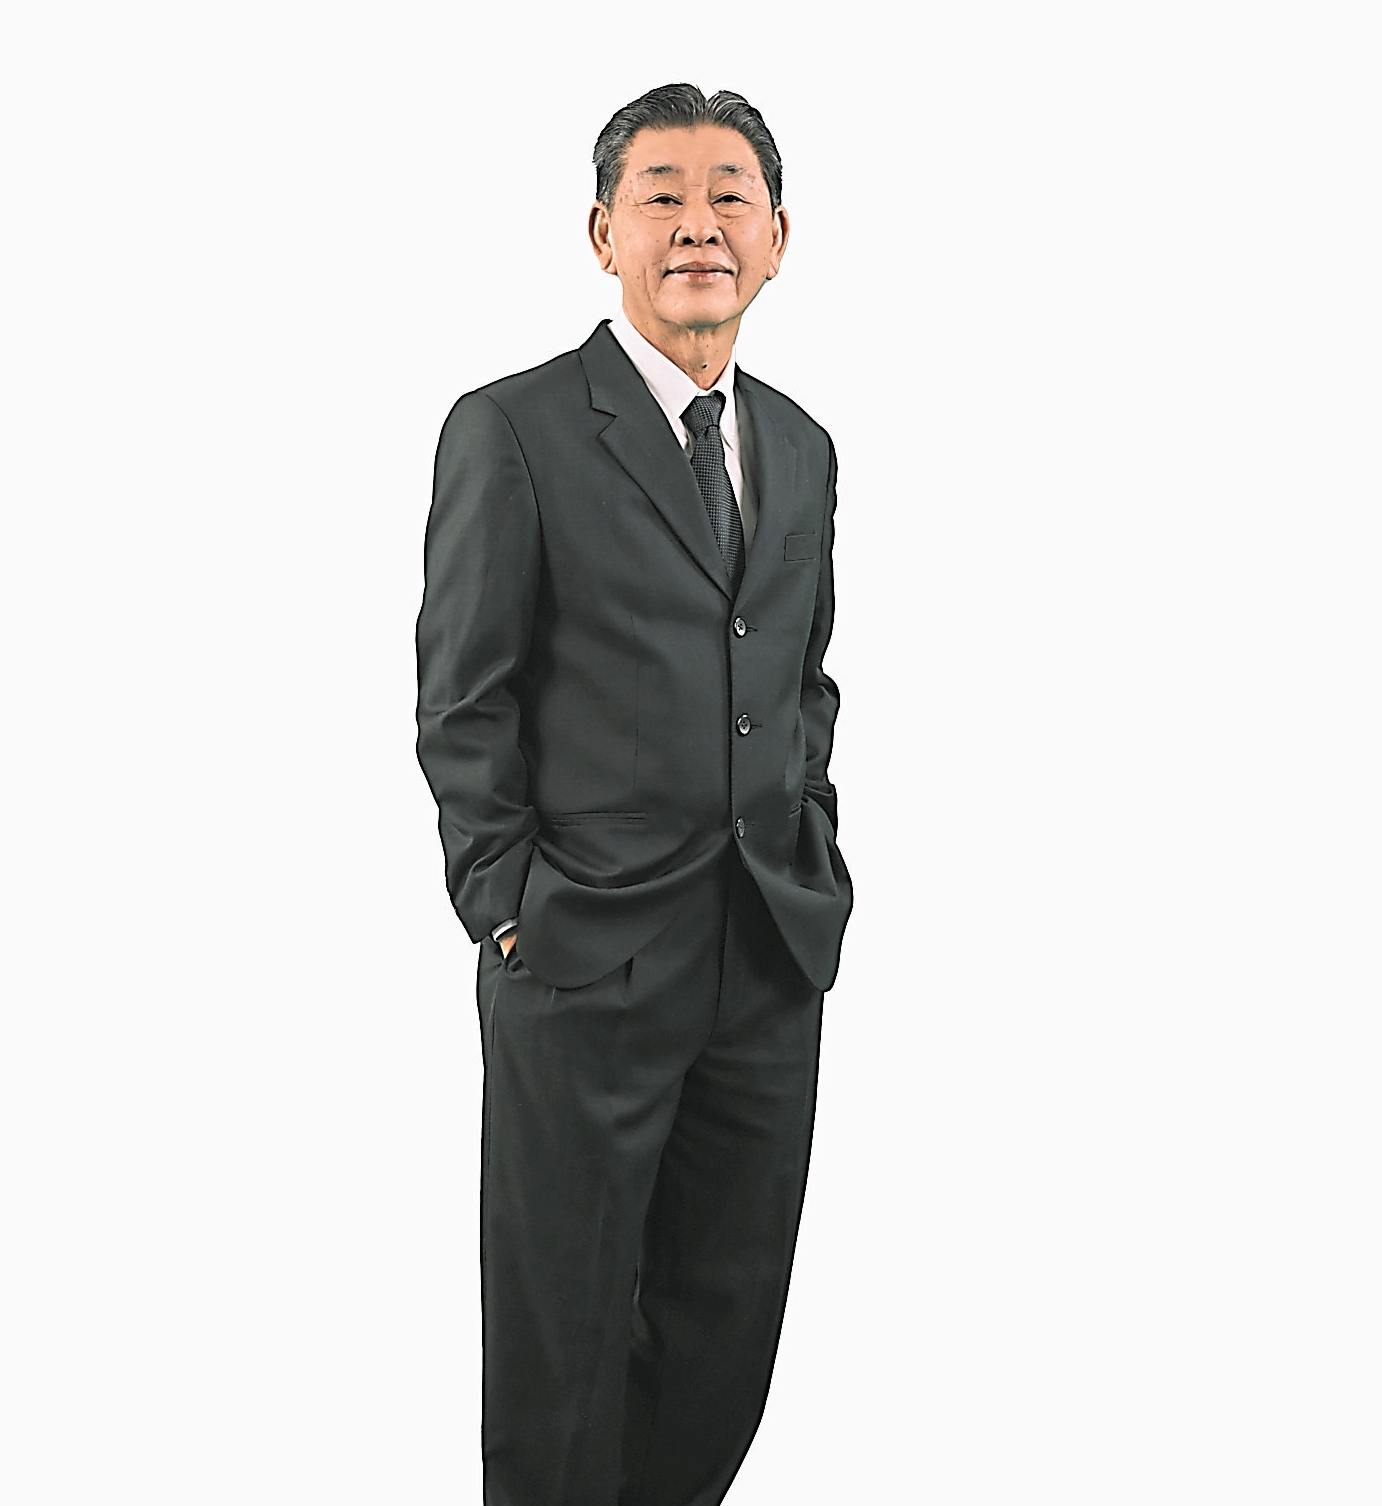 大華集團（Tah Wah Group）掌舵人拿督斯里方炎華（67歲）